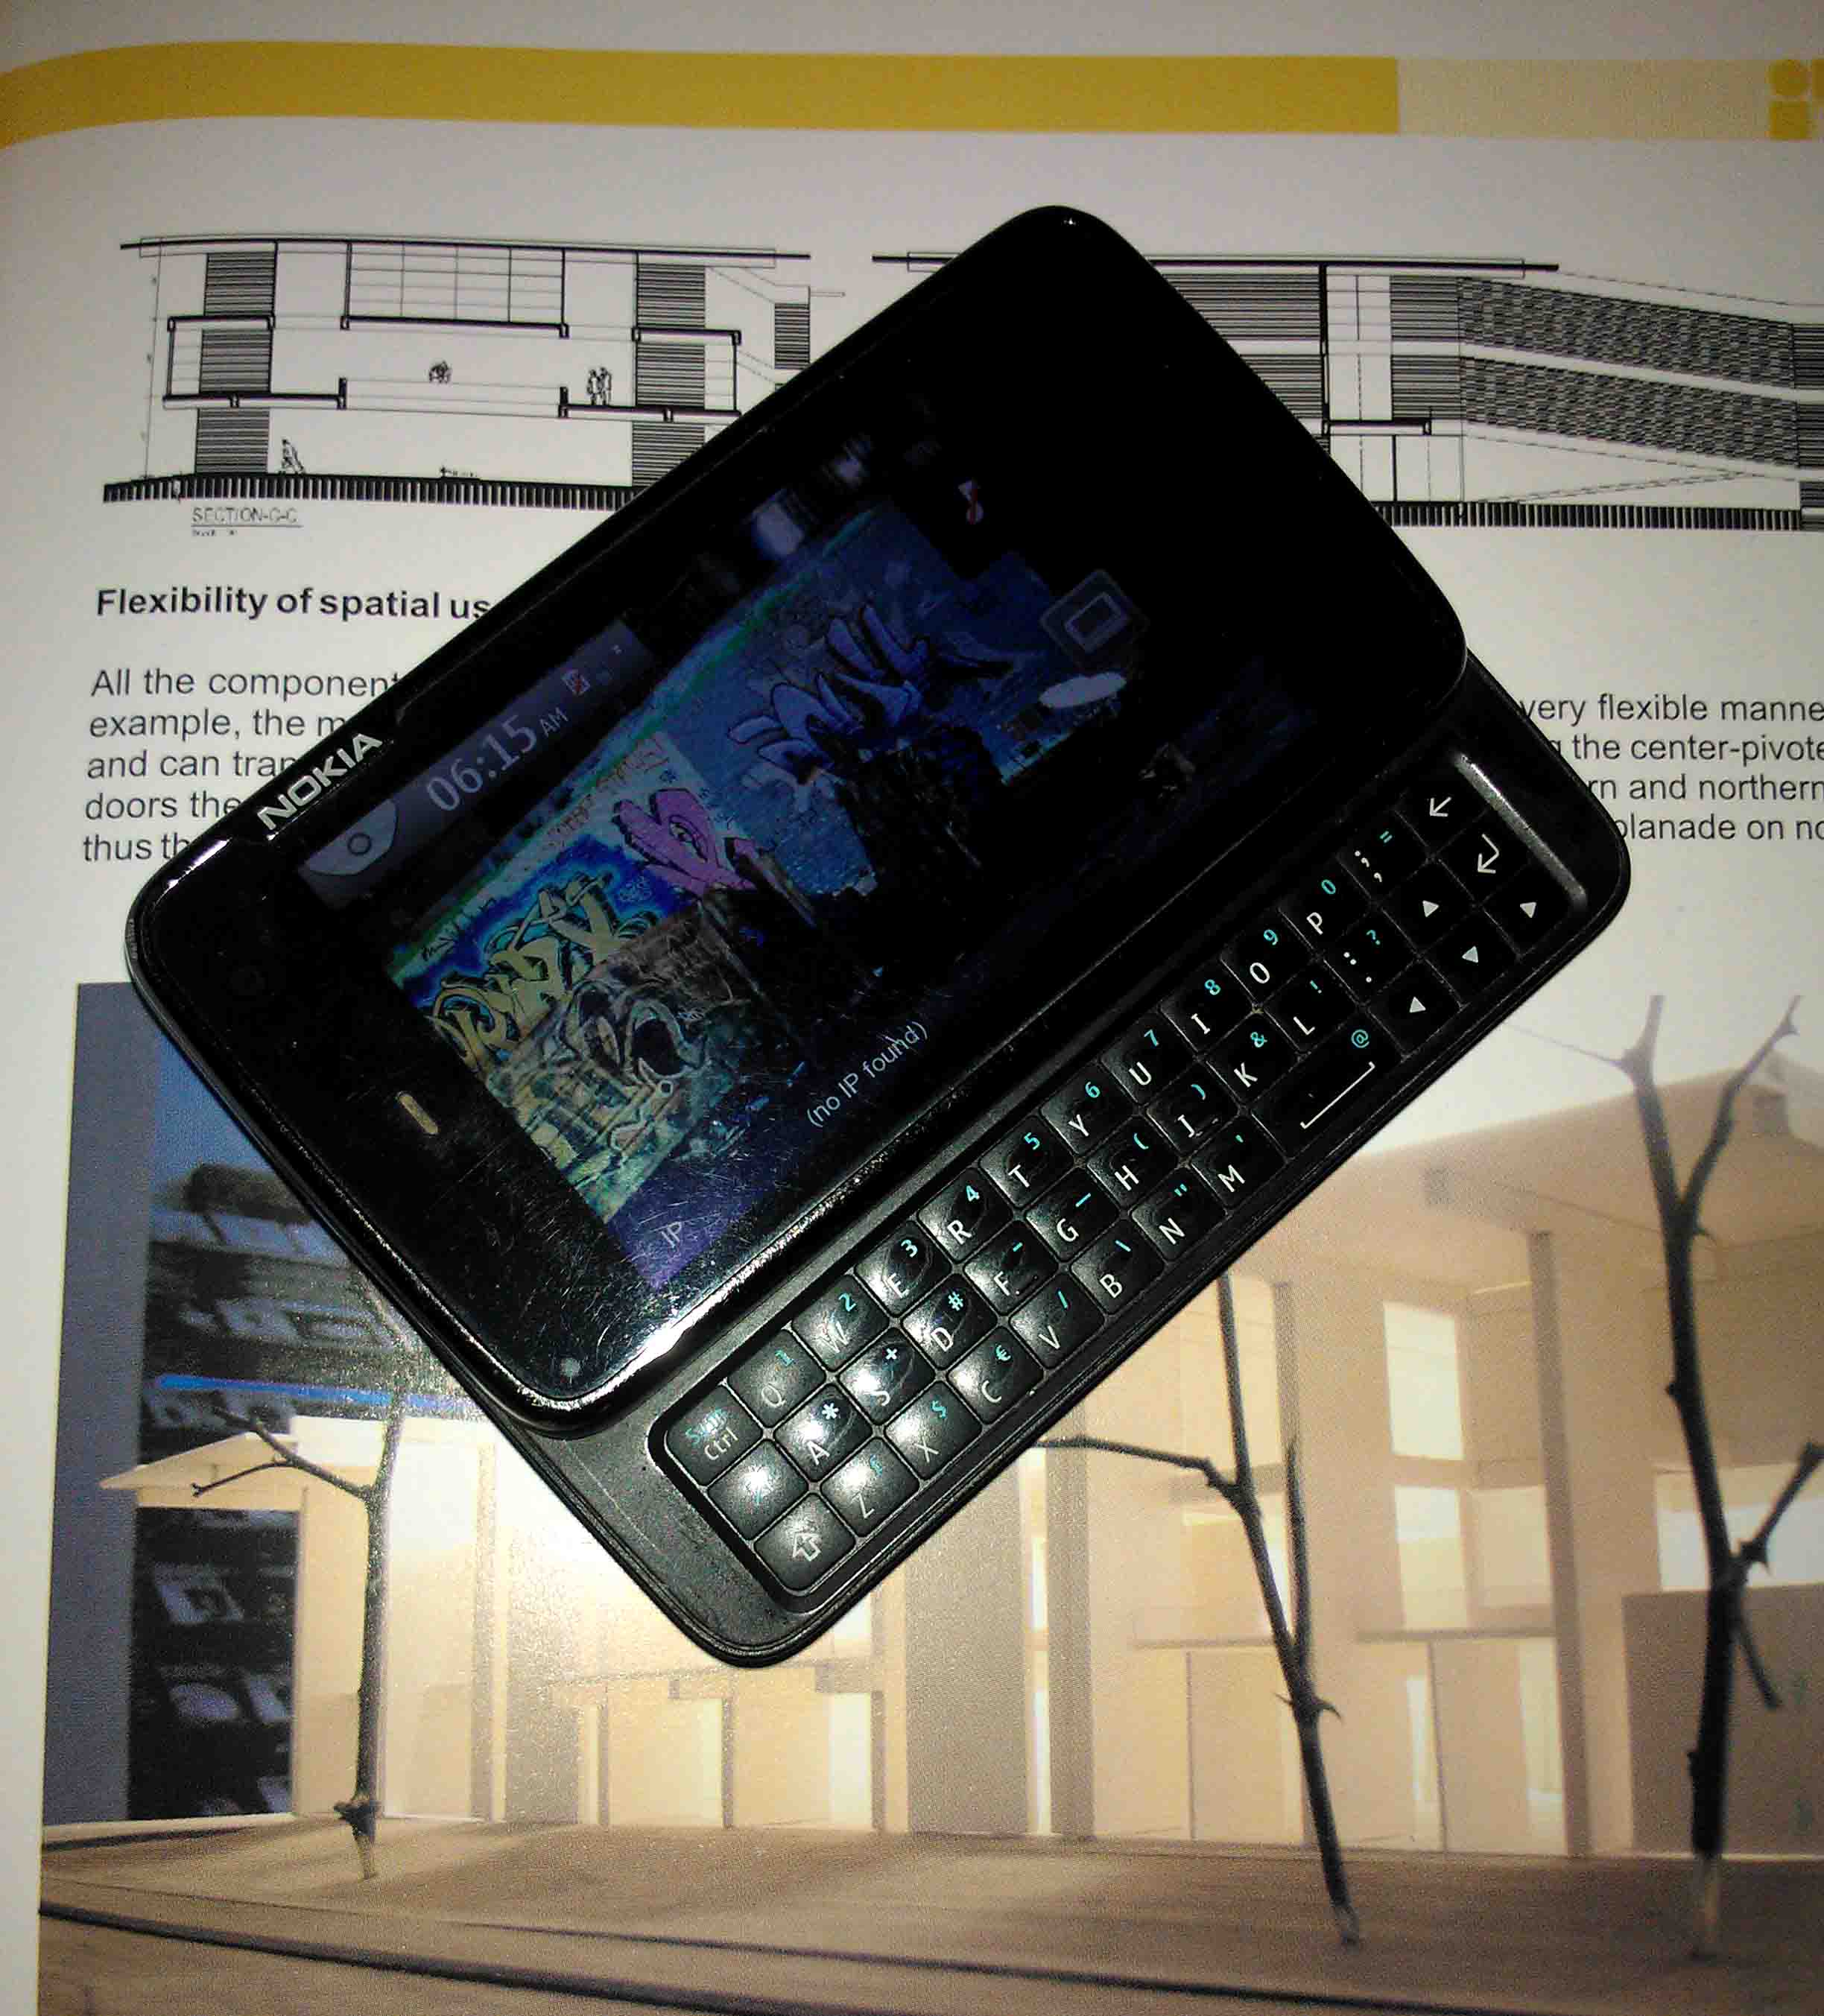 NOKIA N900 SALE LINUX BASED OS - MAEMO5 large image 0